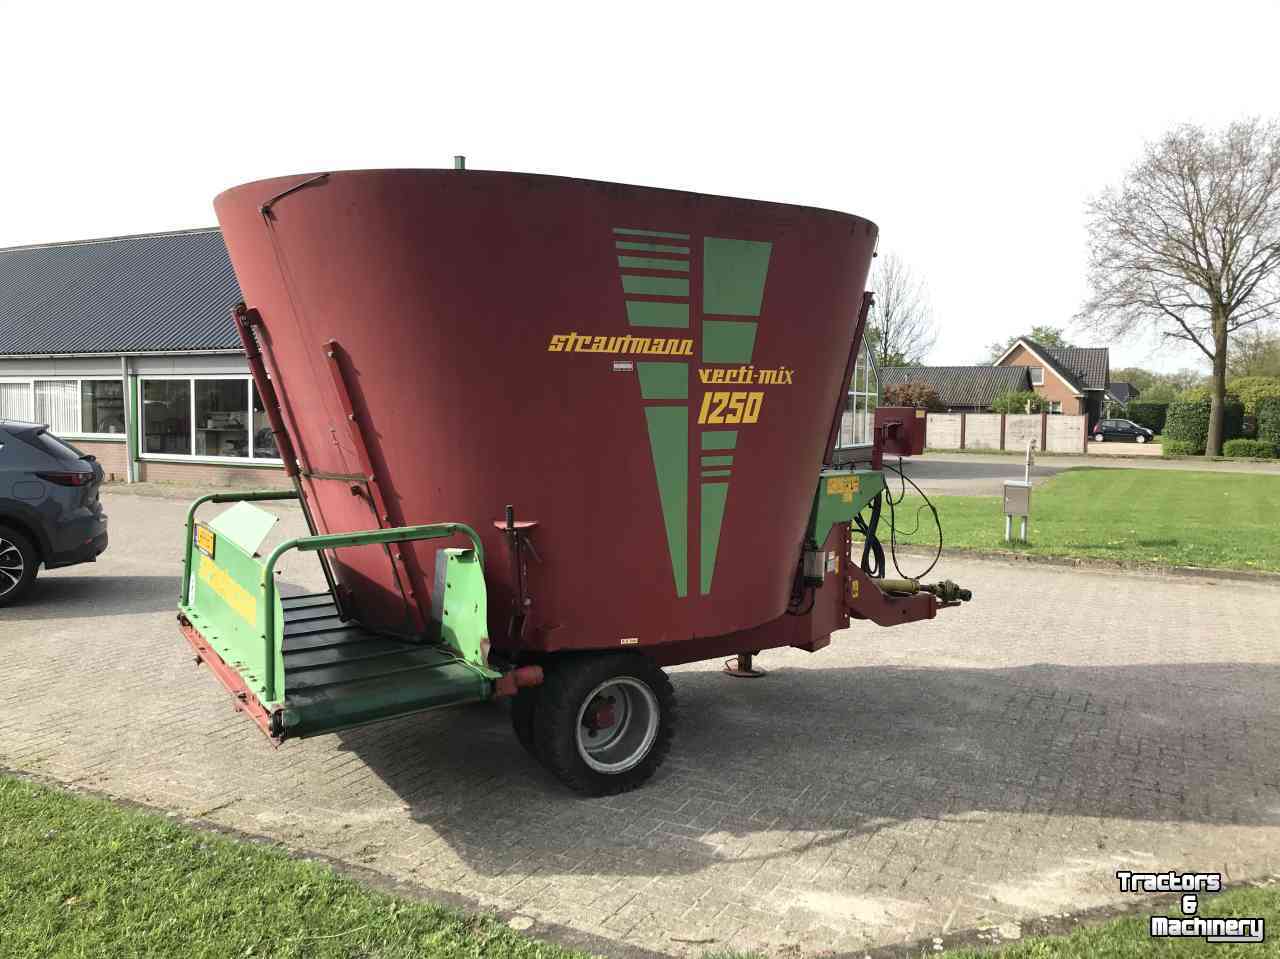 Futtermischwagen Vertikal Strautmann Vertimix 1250